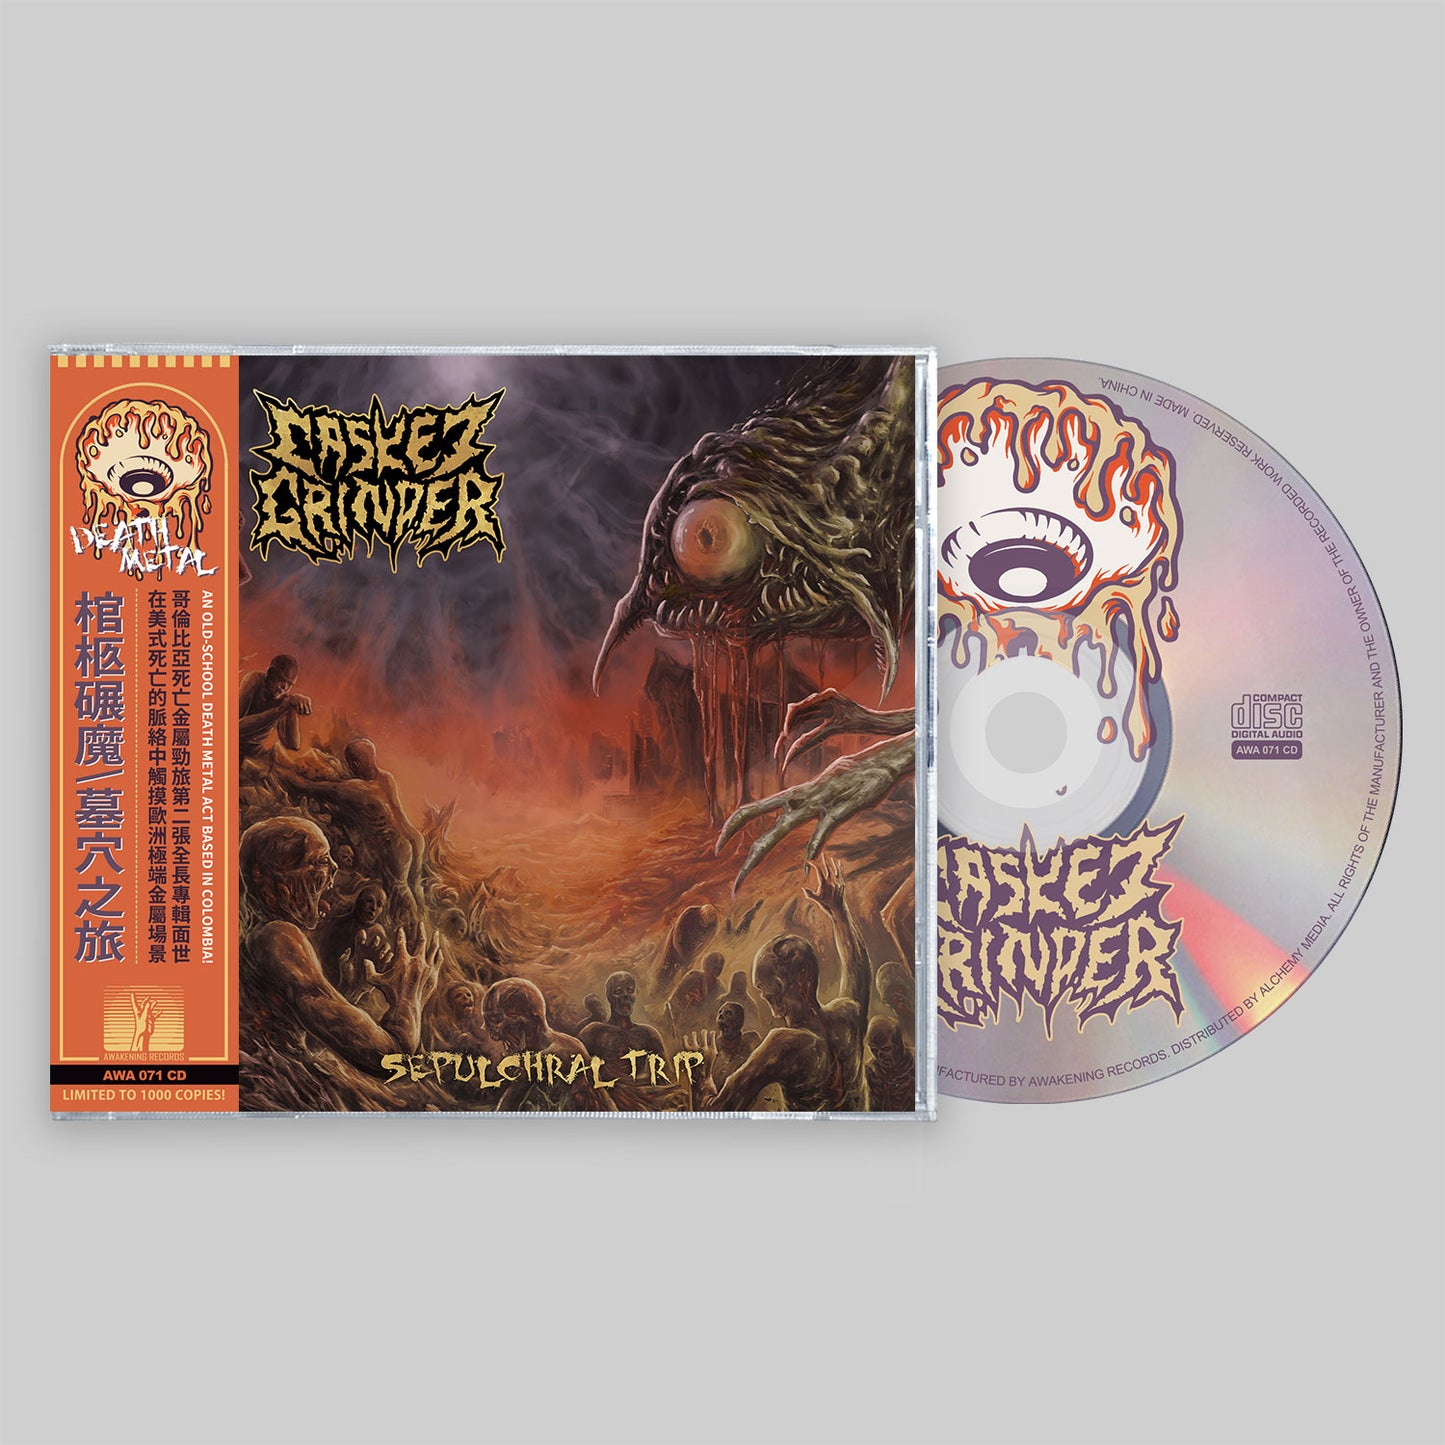 Casket Grinder - Sepulchral Trip CD